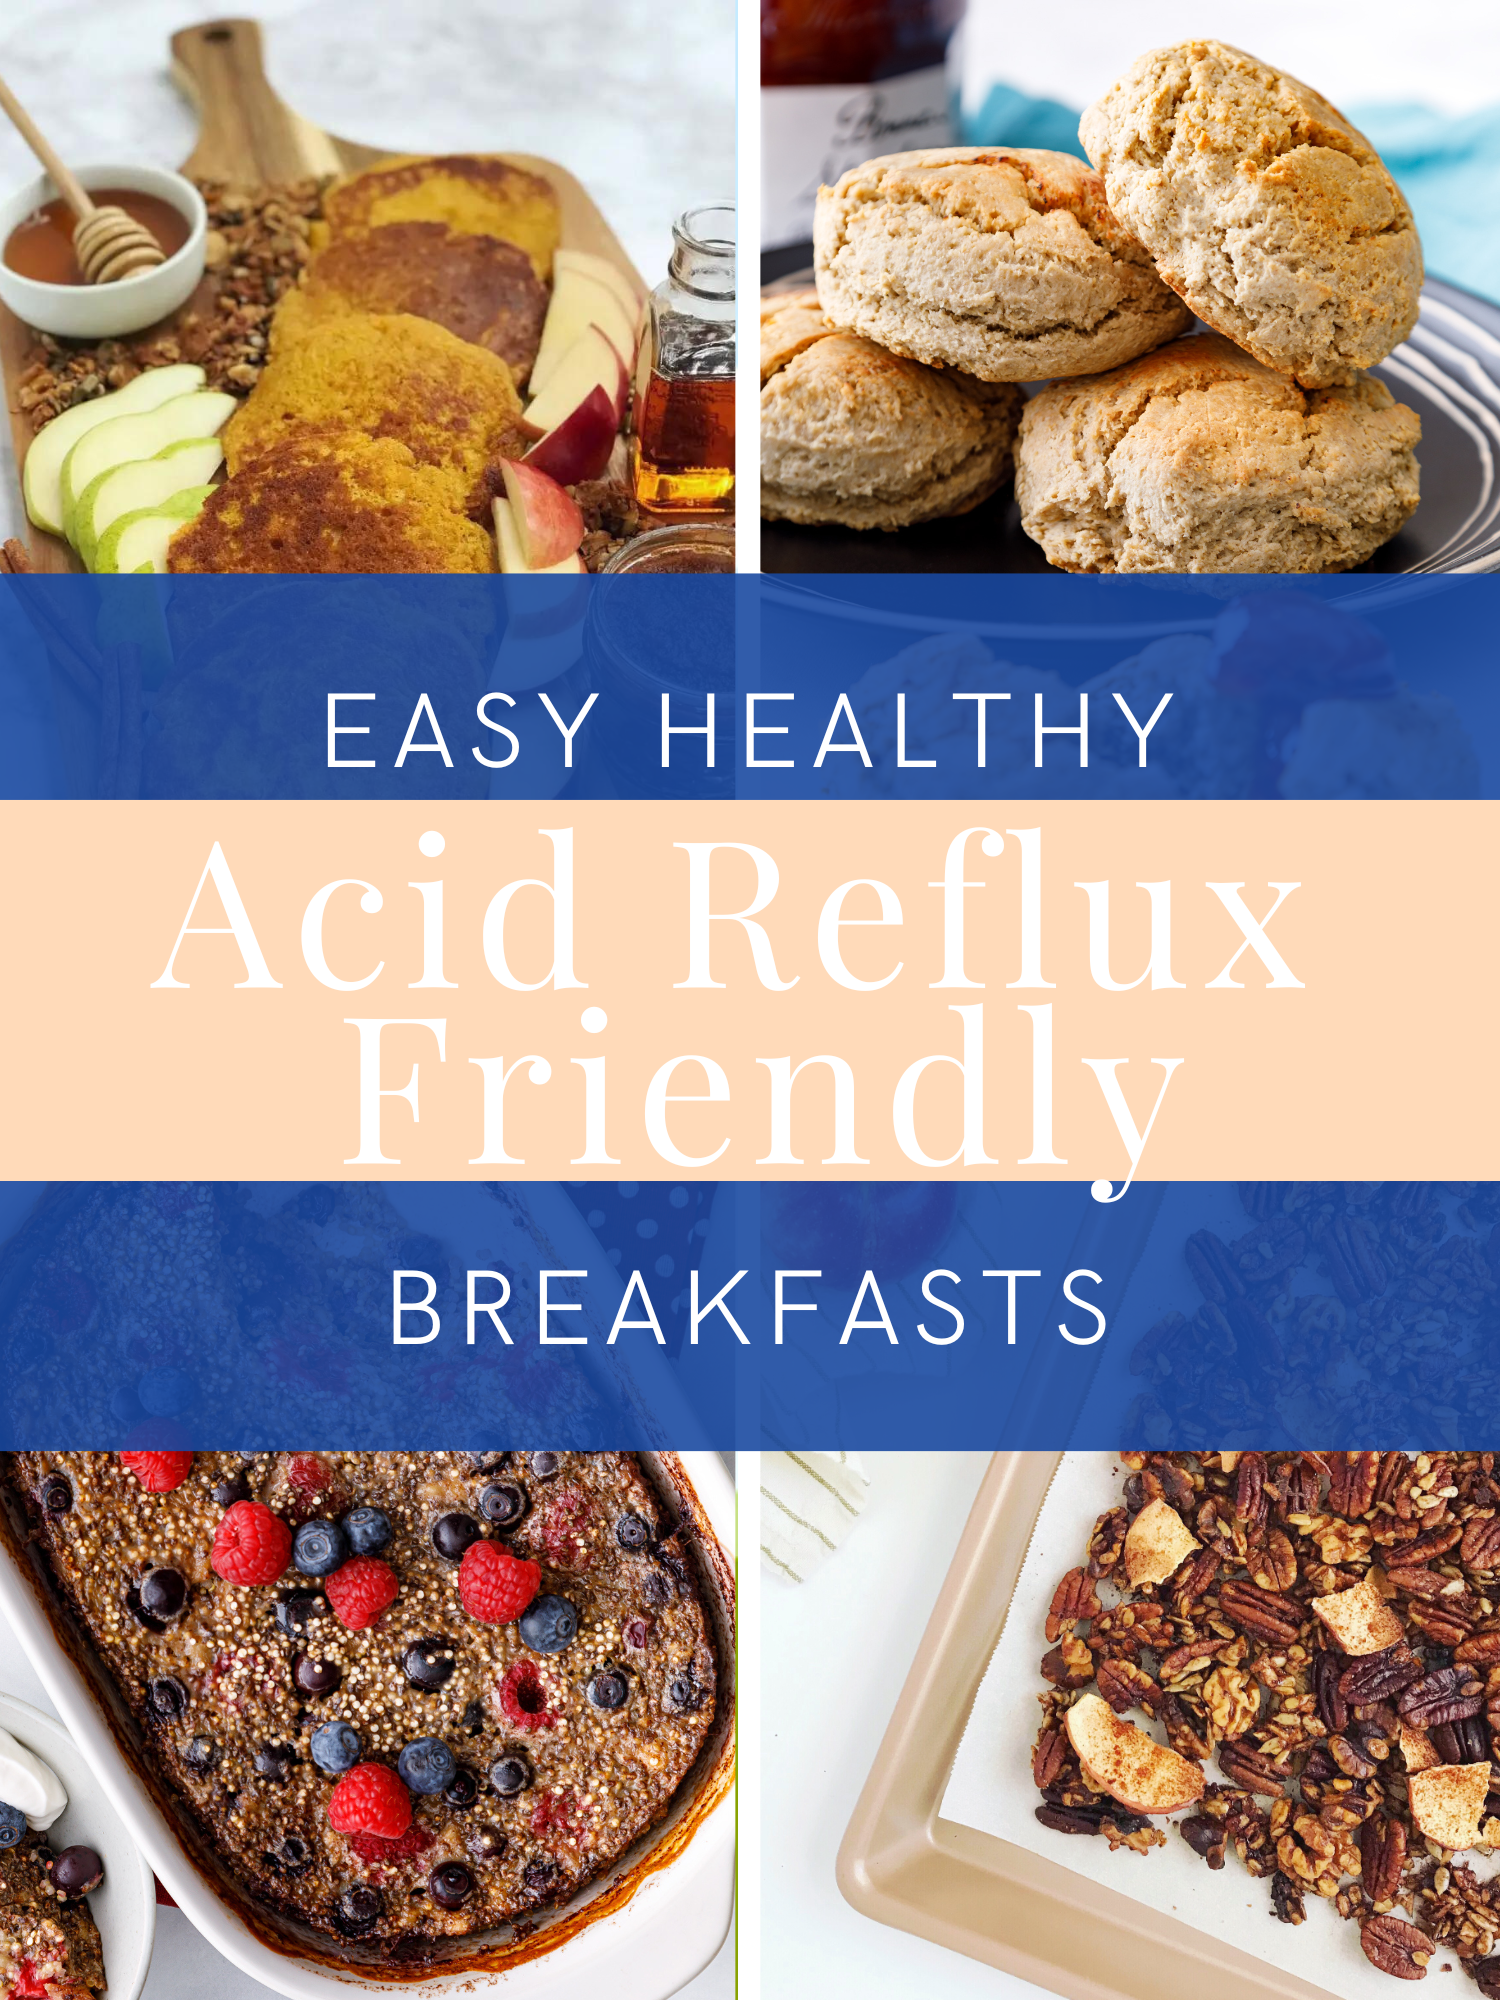 10 Easy Healthy Reflux-Friendly Breakfast Ideas